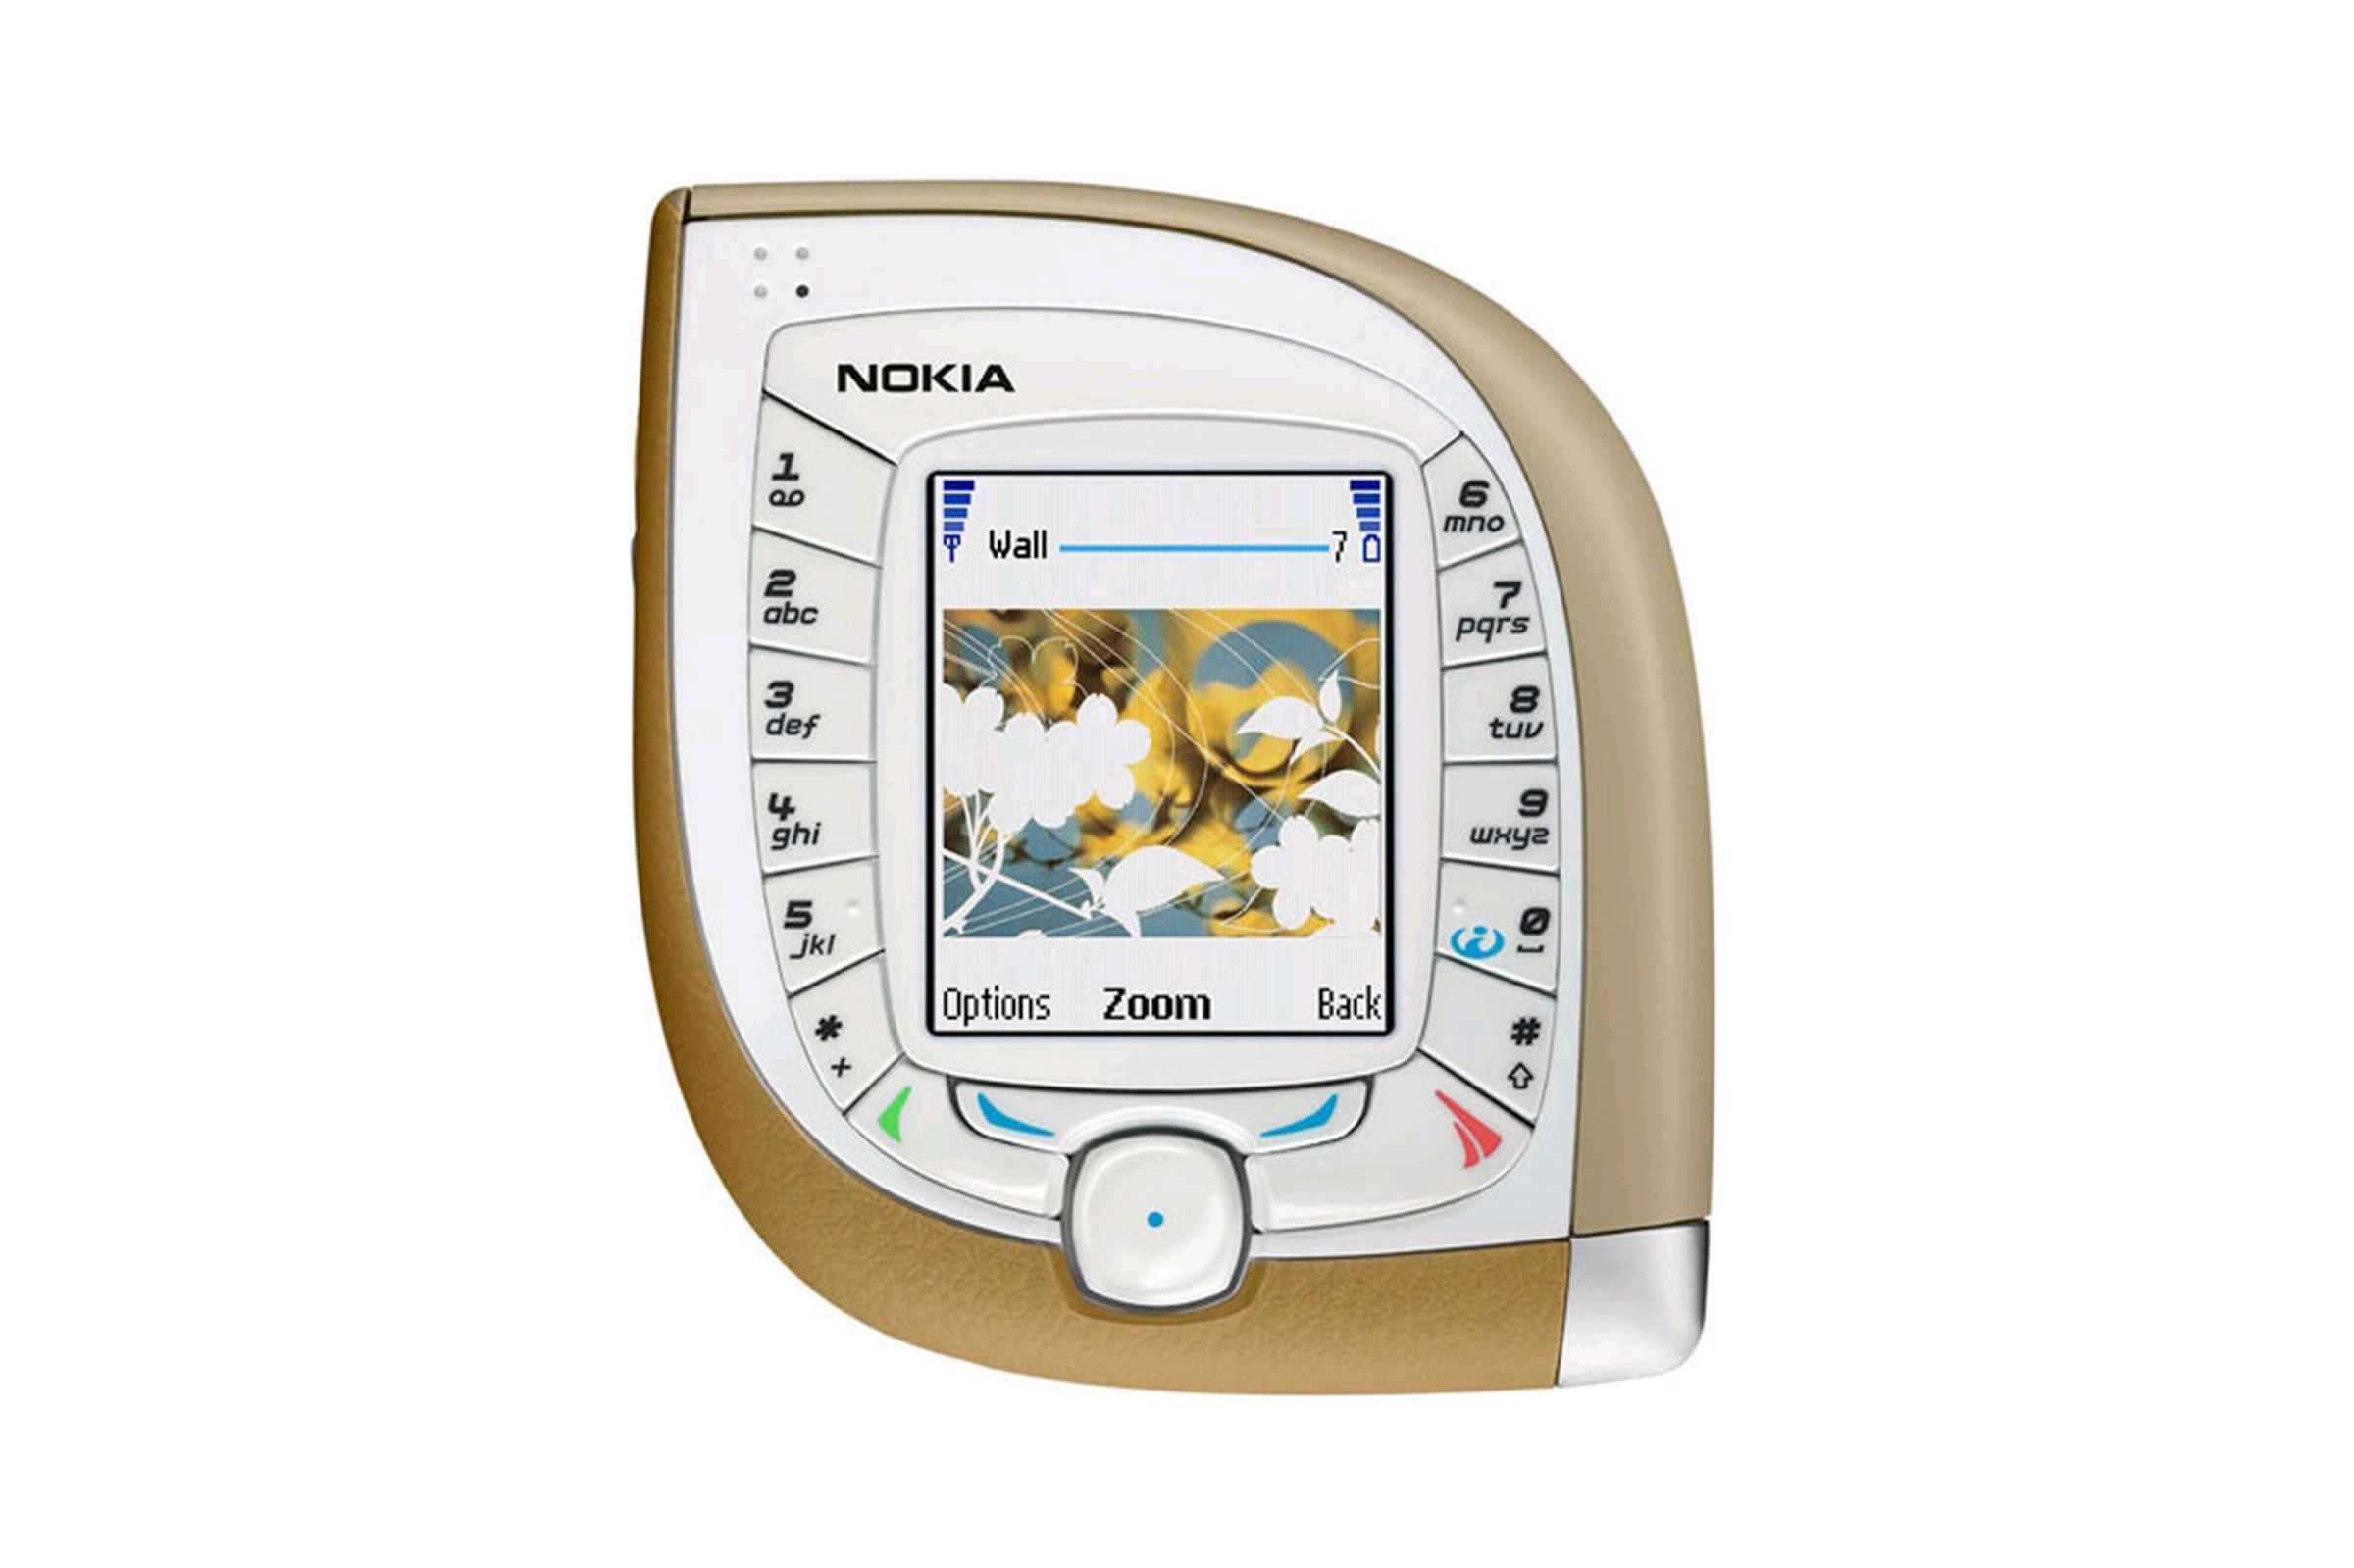 Nokia: a visual history